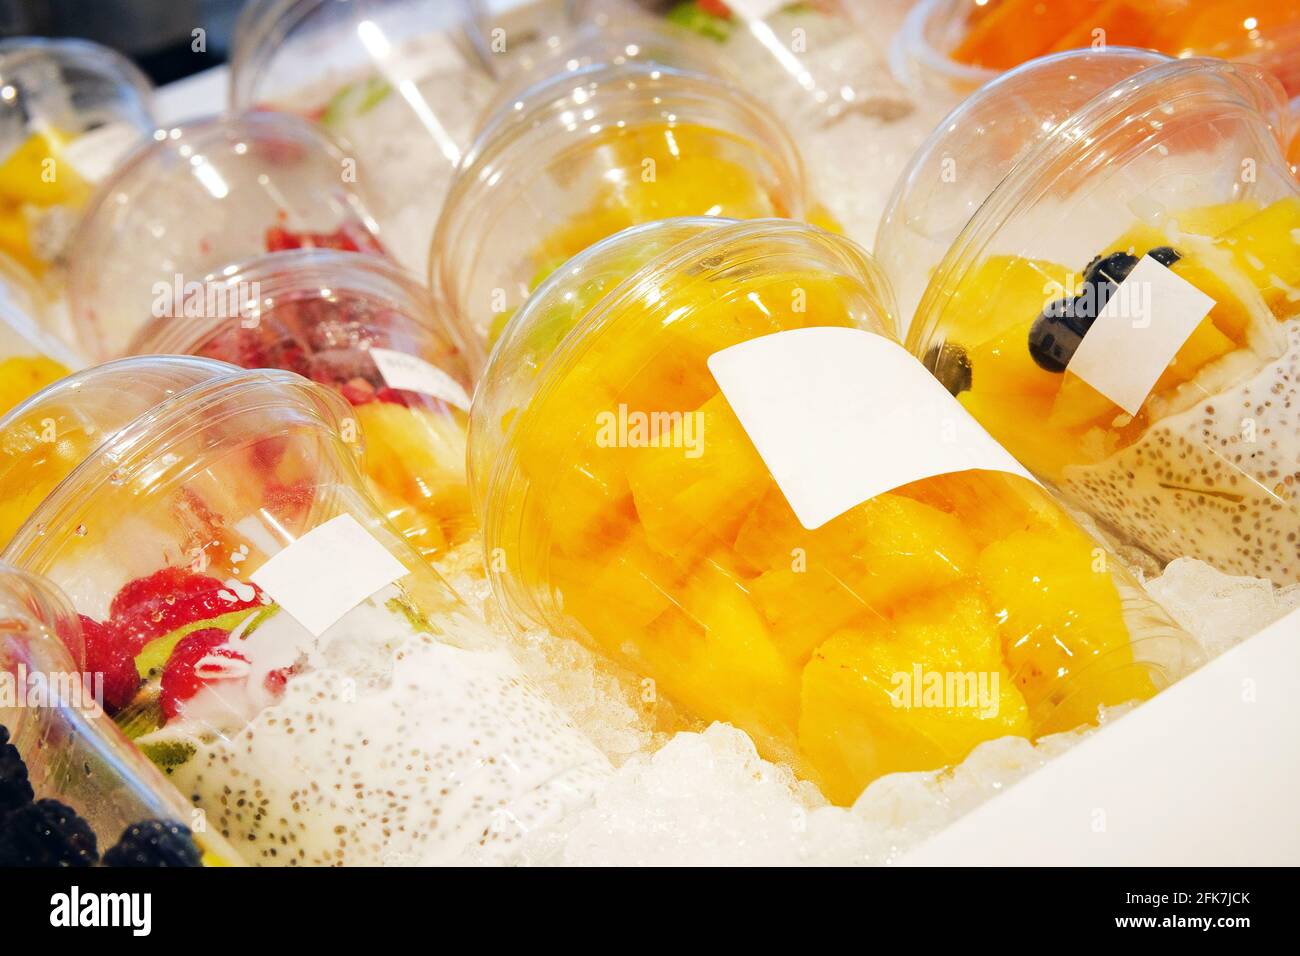 Pezzi di ananas e di altri frutti con lo yogurt di semi di chia sono disposti in tazze monouso di plastica e venduti in negozio. Cibi vegetariani sani concep Foto Stock